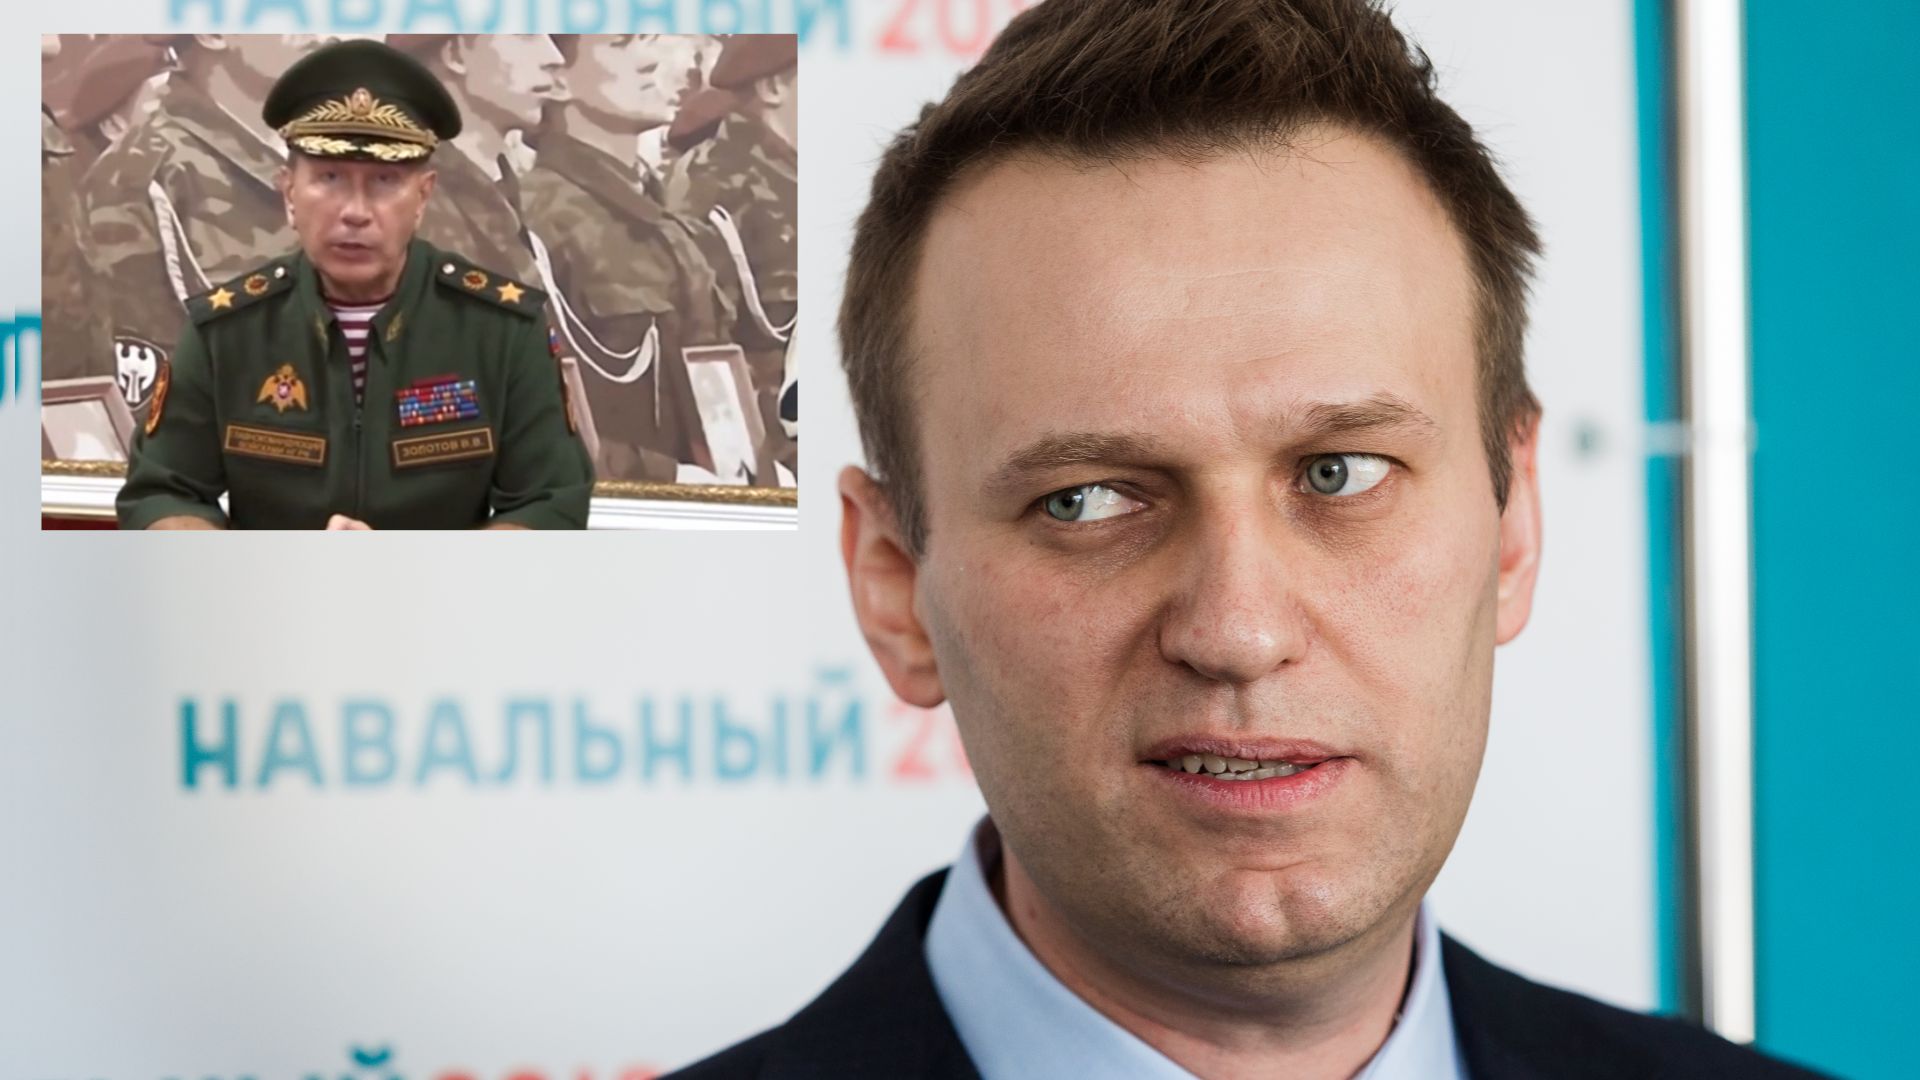 Съд отхвърли иск за клевета от бивш бодигард на Путин срещу Навални